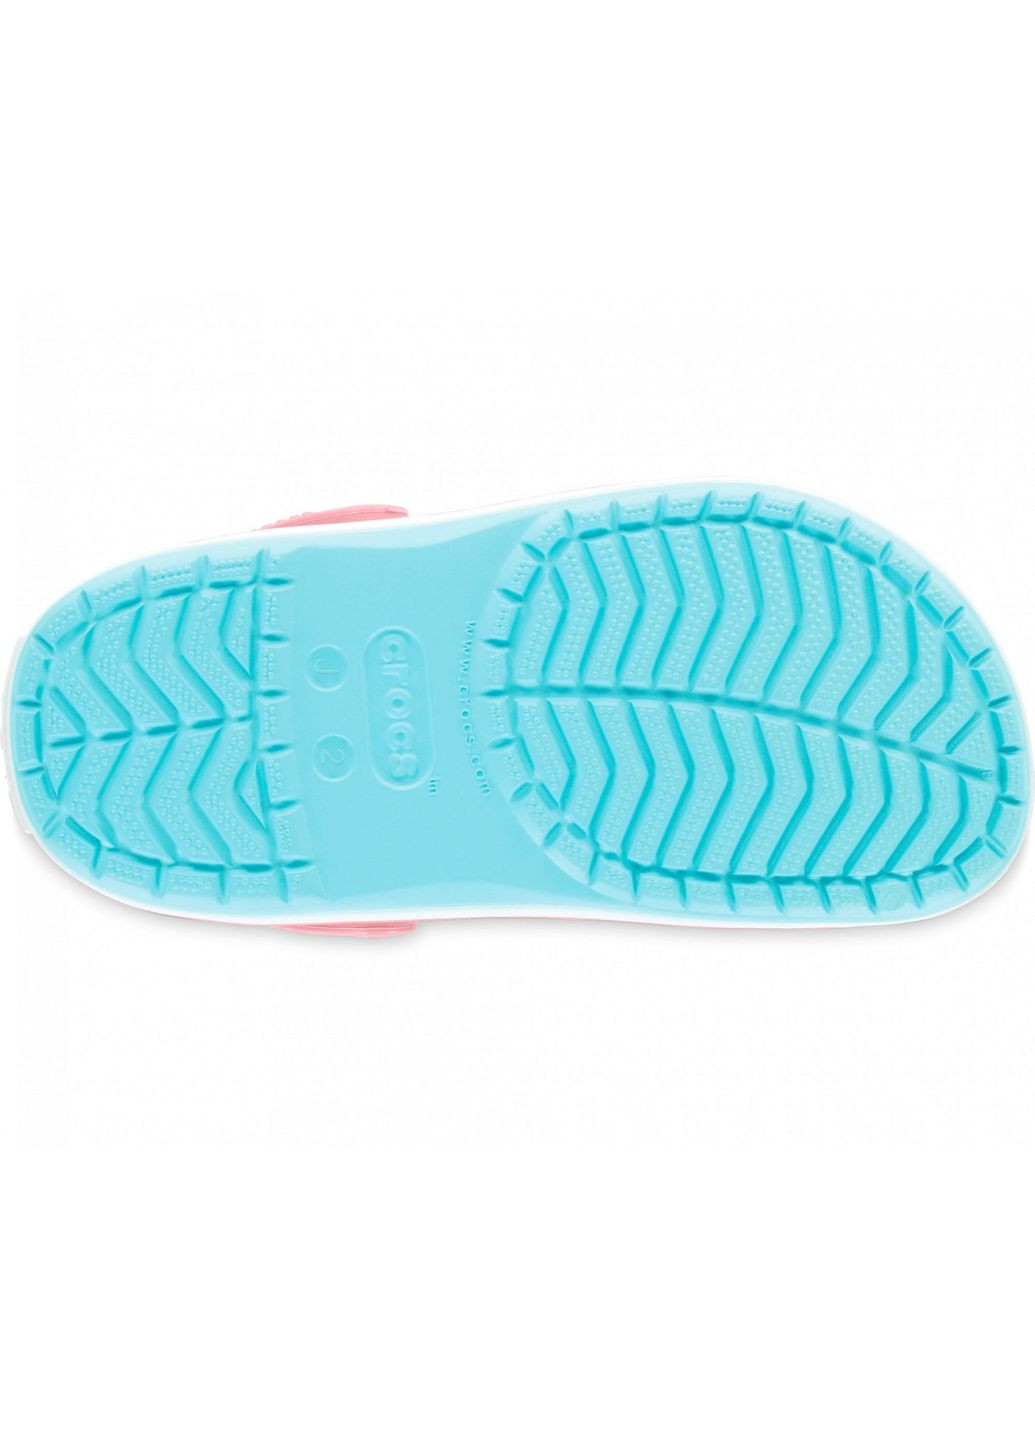 Голубые кроксы kids crocband clog ice blue j1-32.5-20.5 см 204537 Crocs